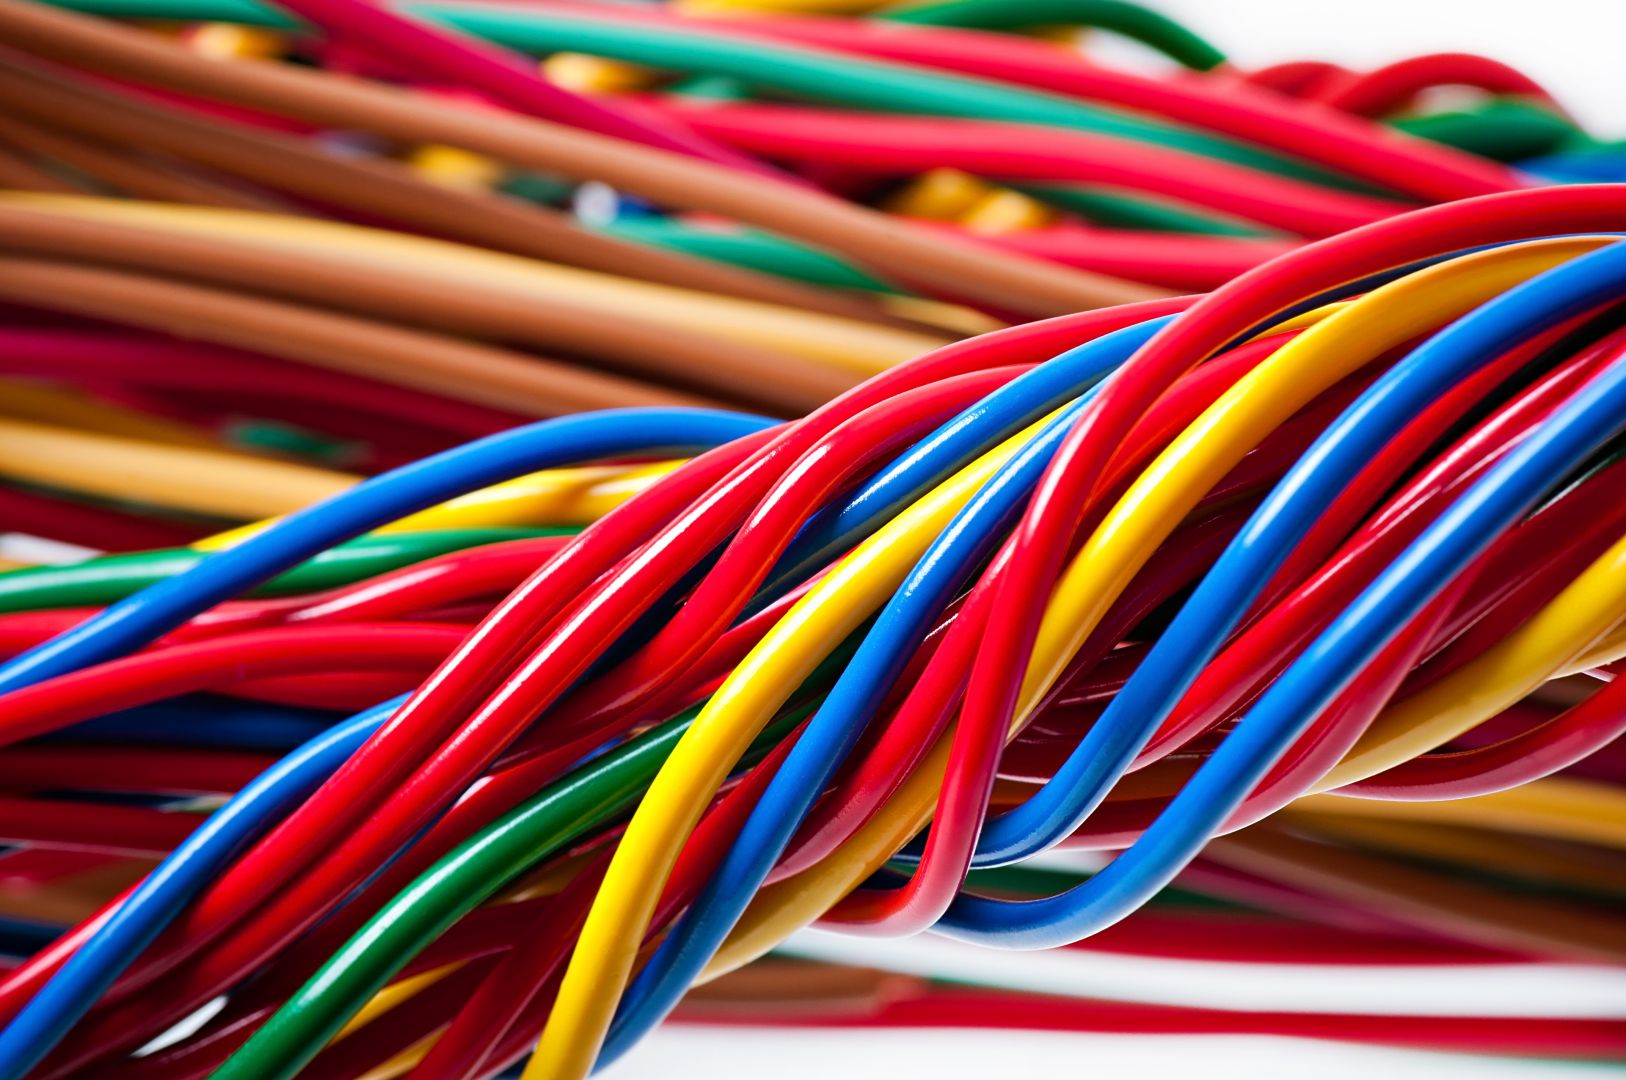 Poptávka na dodavatel silových kabelů (Elektromateriál) - Tábor